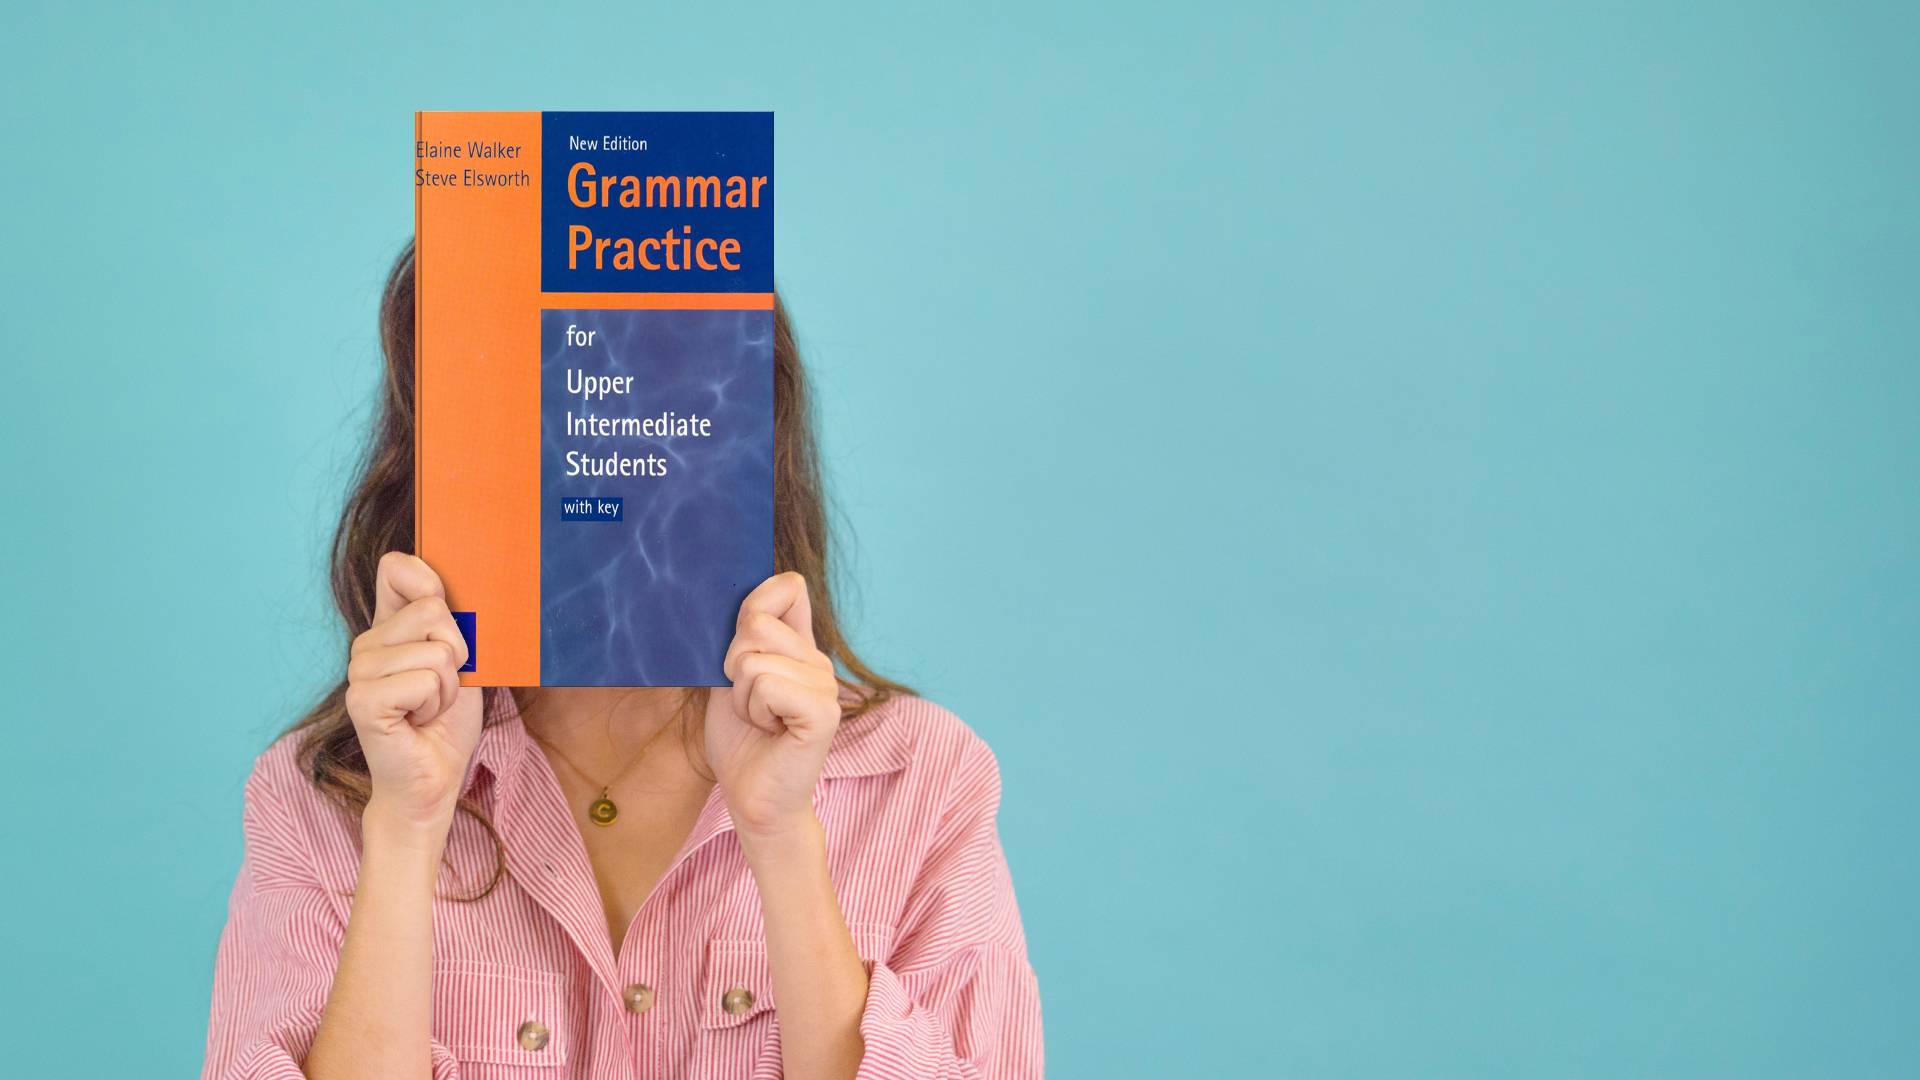 خرید کتاب دستور زبان انگلیسی | کتاب زبان گرامر پرکتیس فور آپر اینترمدیت ویرایش جدید | خرید کتاب Grammar Practice for Upper Intermediate New Edition